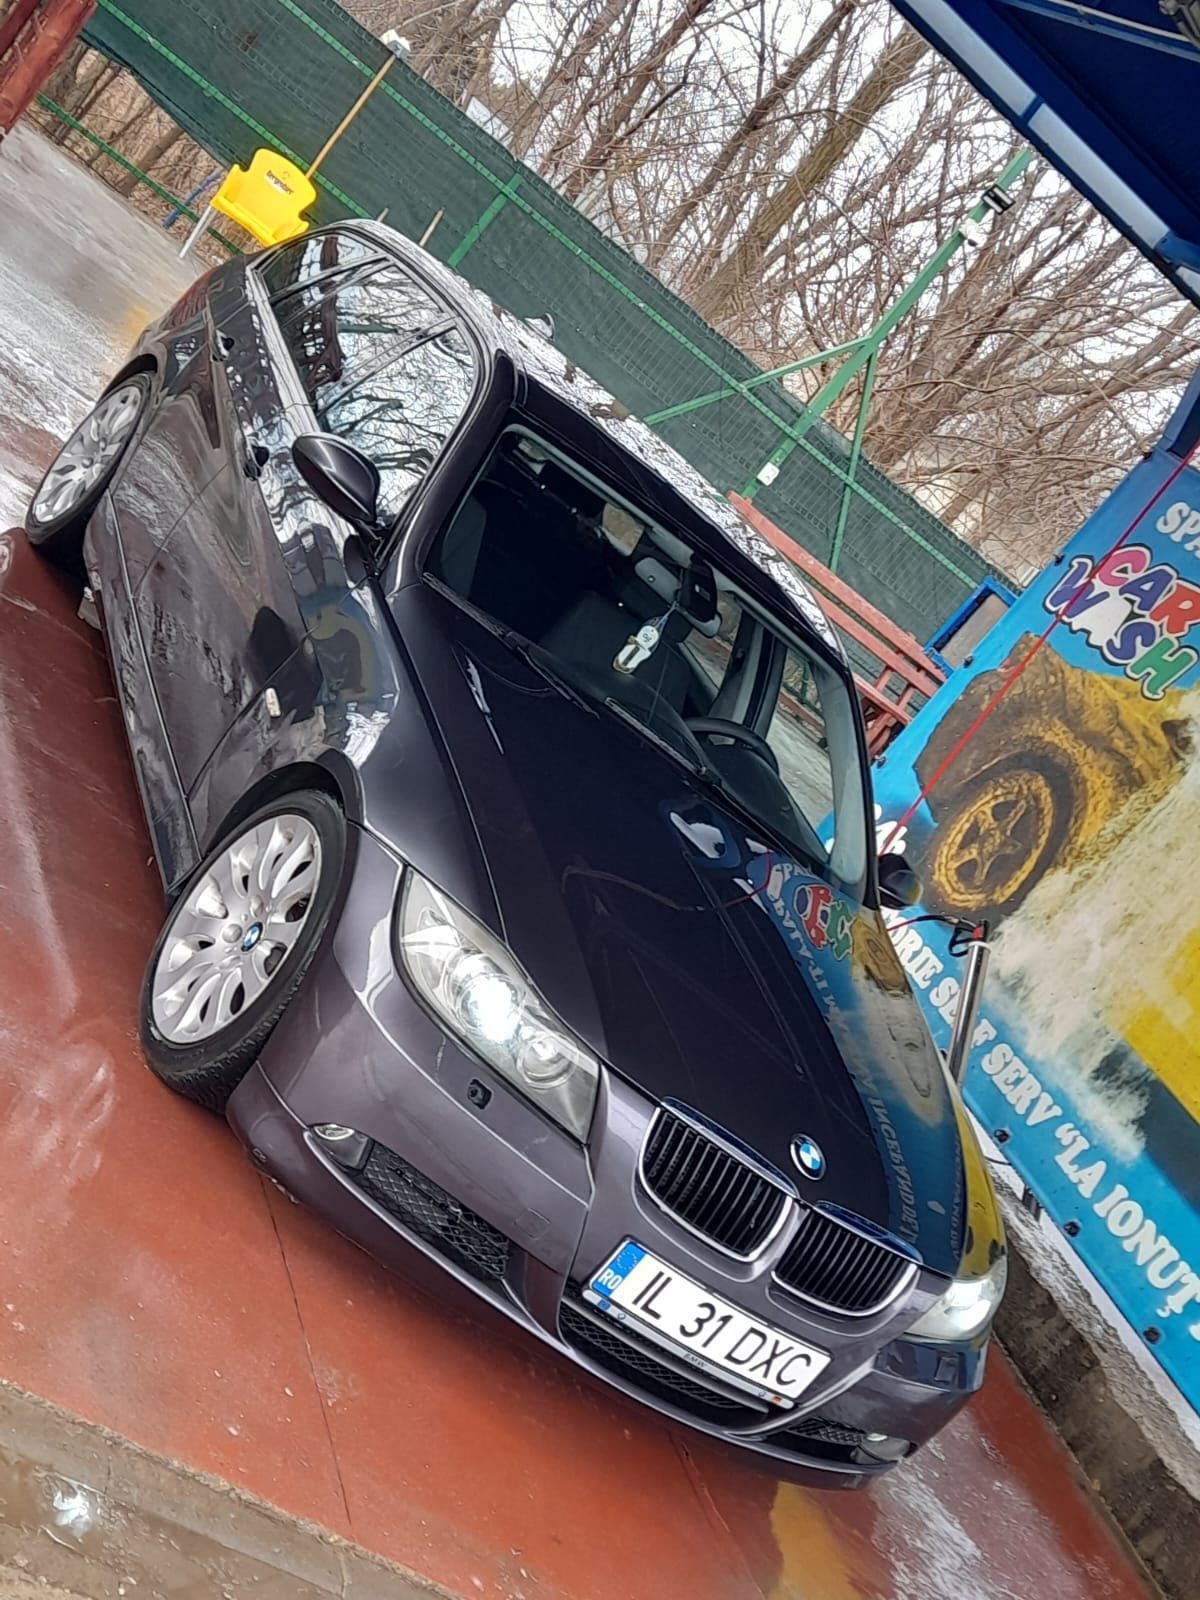 Vând urgent BMW320 diesel 2007